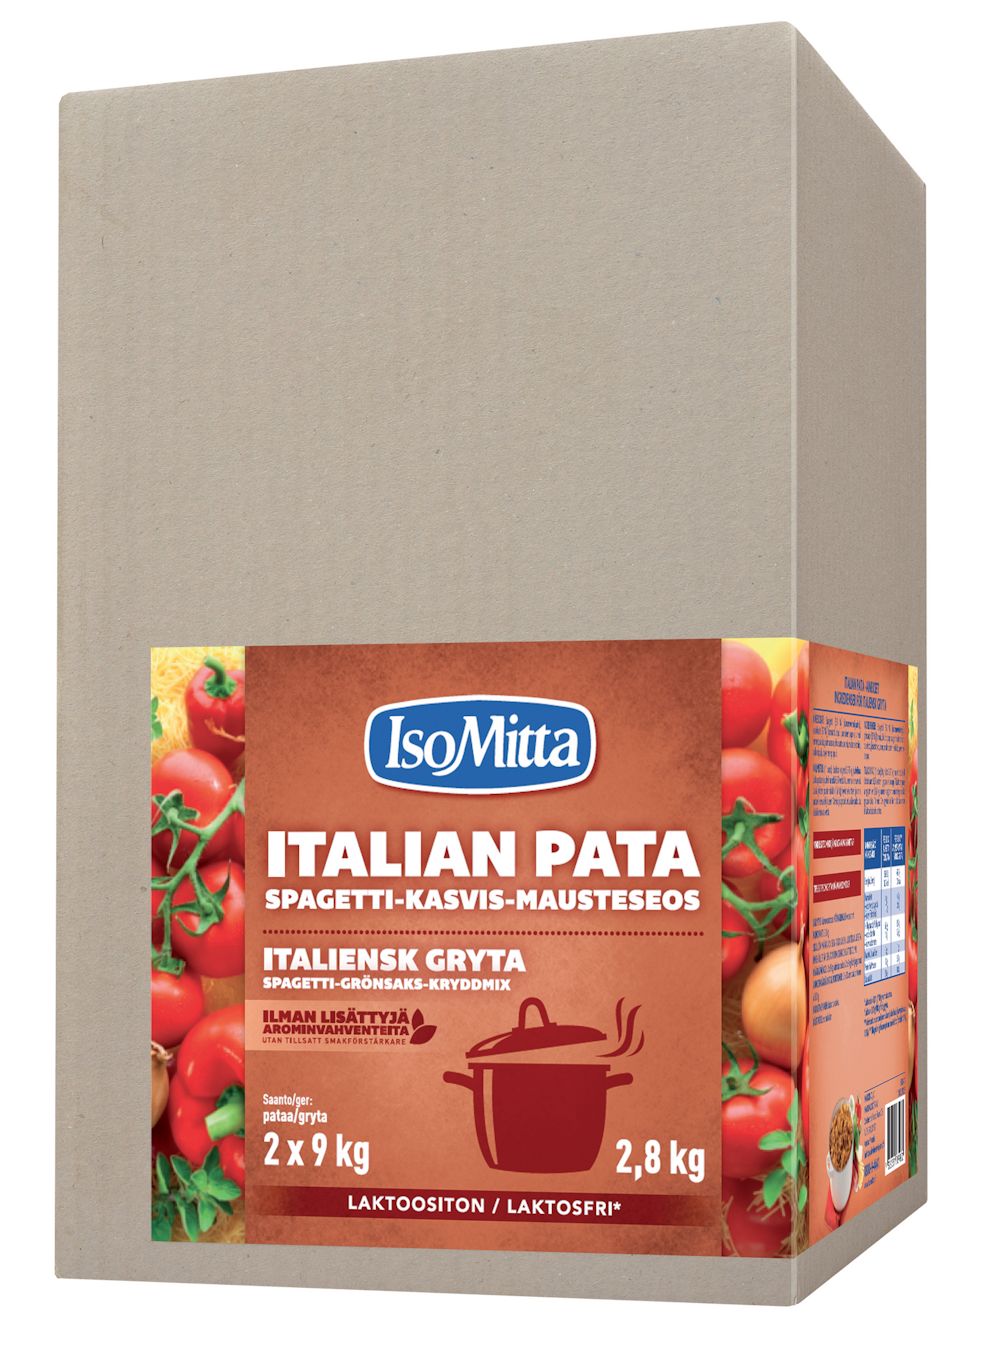 IsoMitta Italian pata spagetti-kasvis-mausteseos 2,8kg — HoReCa-tukku Kespro